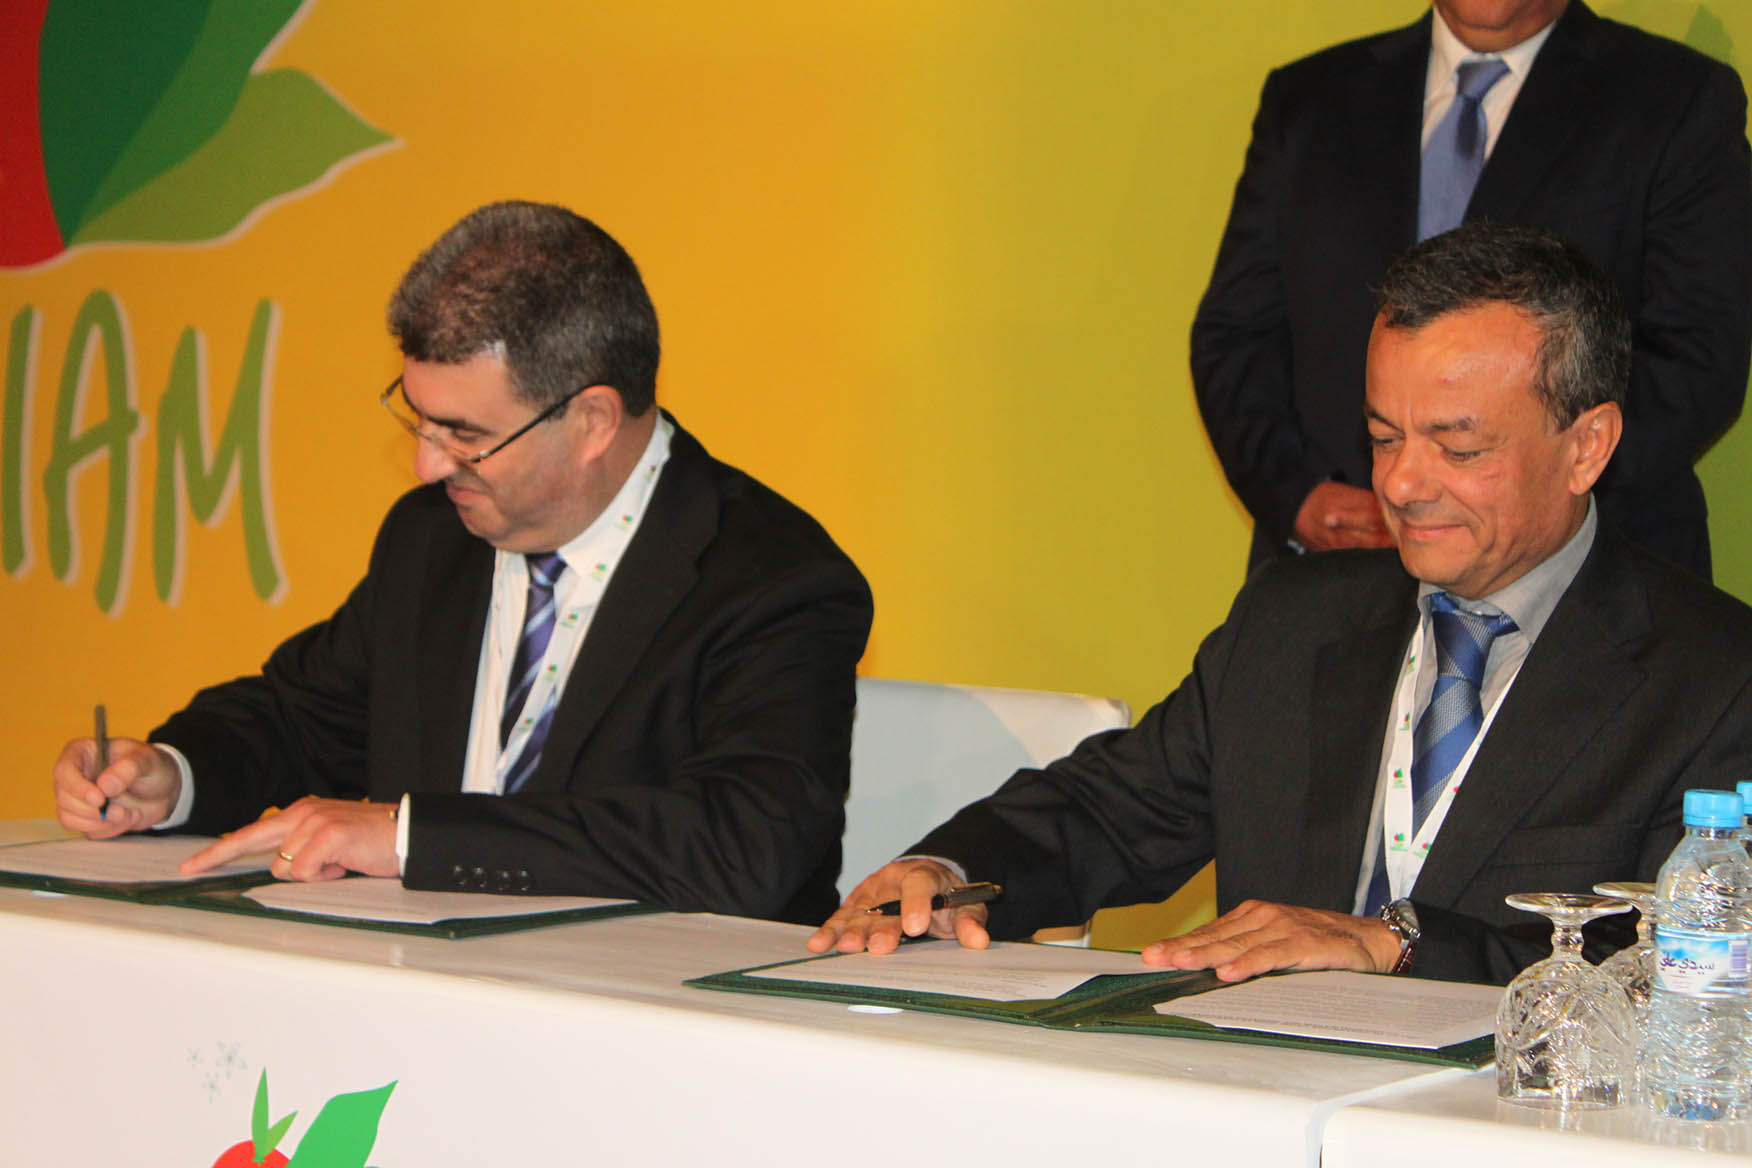 الملتقى الدولي للفلاحة بالمغرب.. توقيع اتفاقيتين لتطوير زراعة الحبوب الزيتية